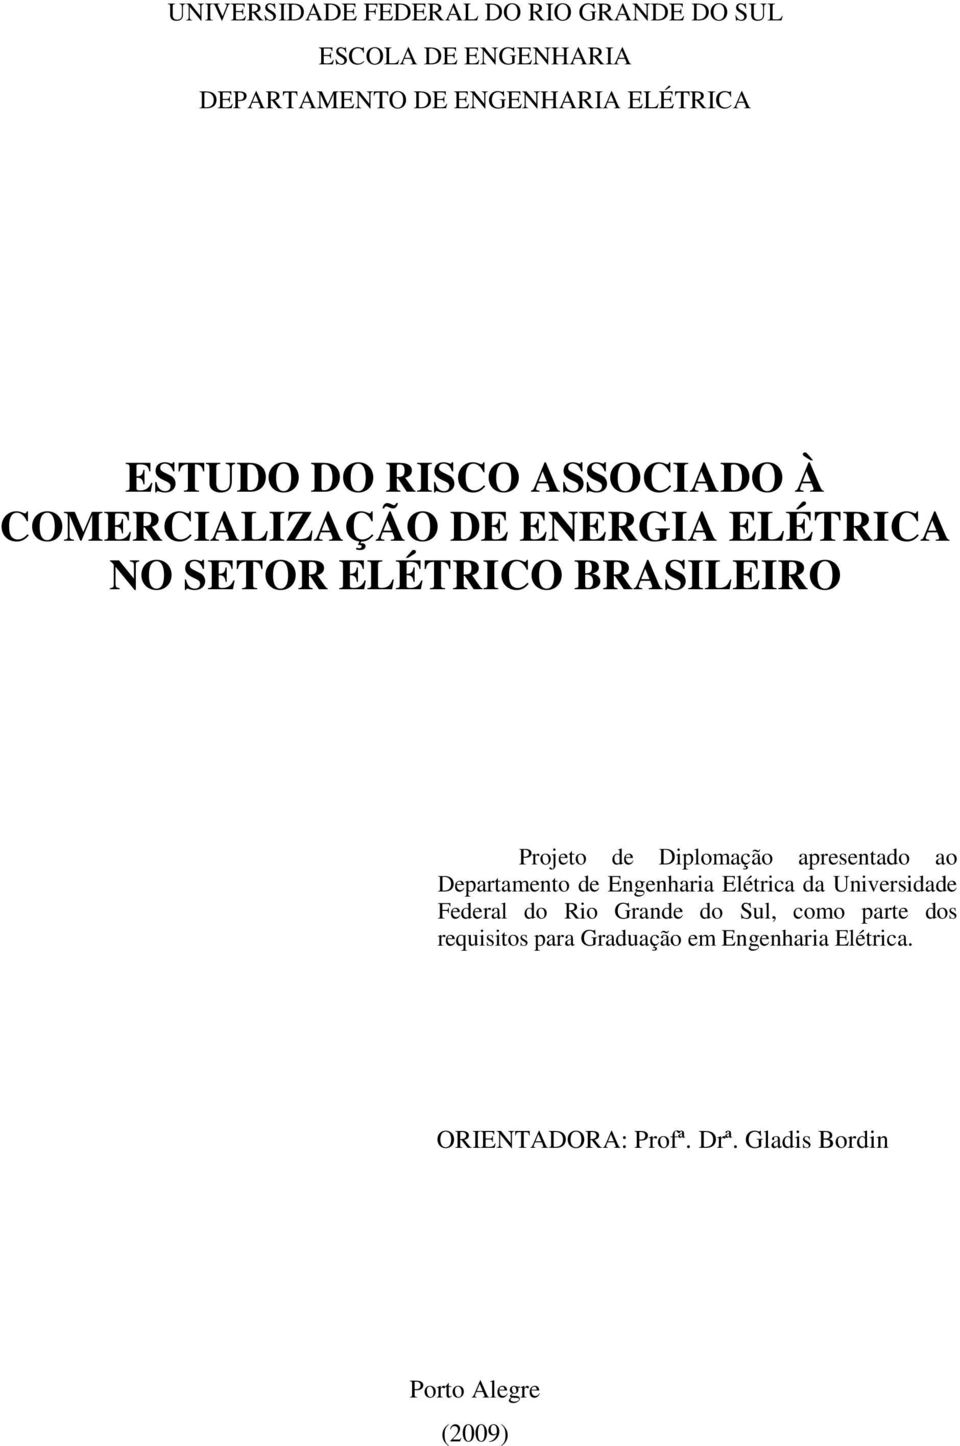 apresentado ao Departamento de Engenharia Elétrica da Universidade Federal do Rio Grande do Sul, como parte